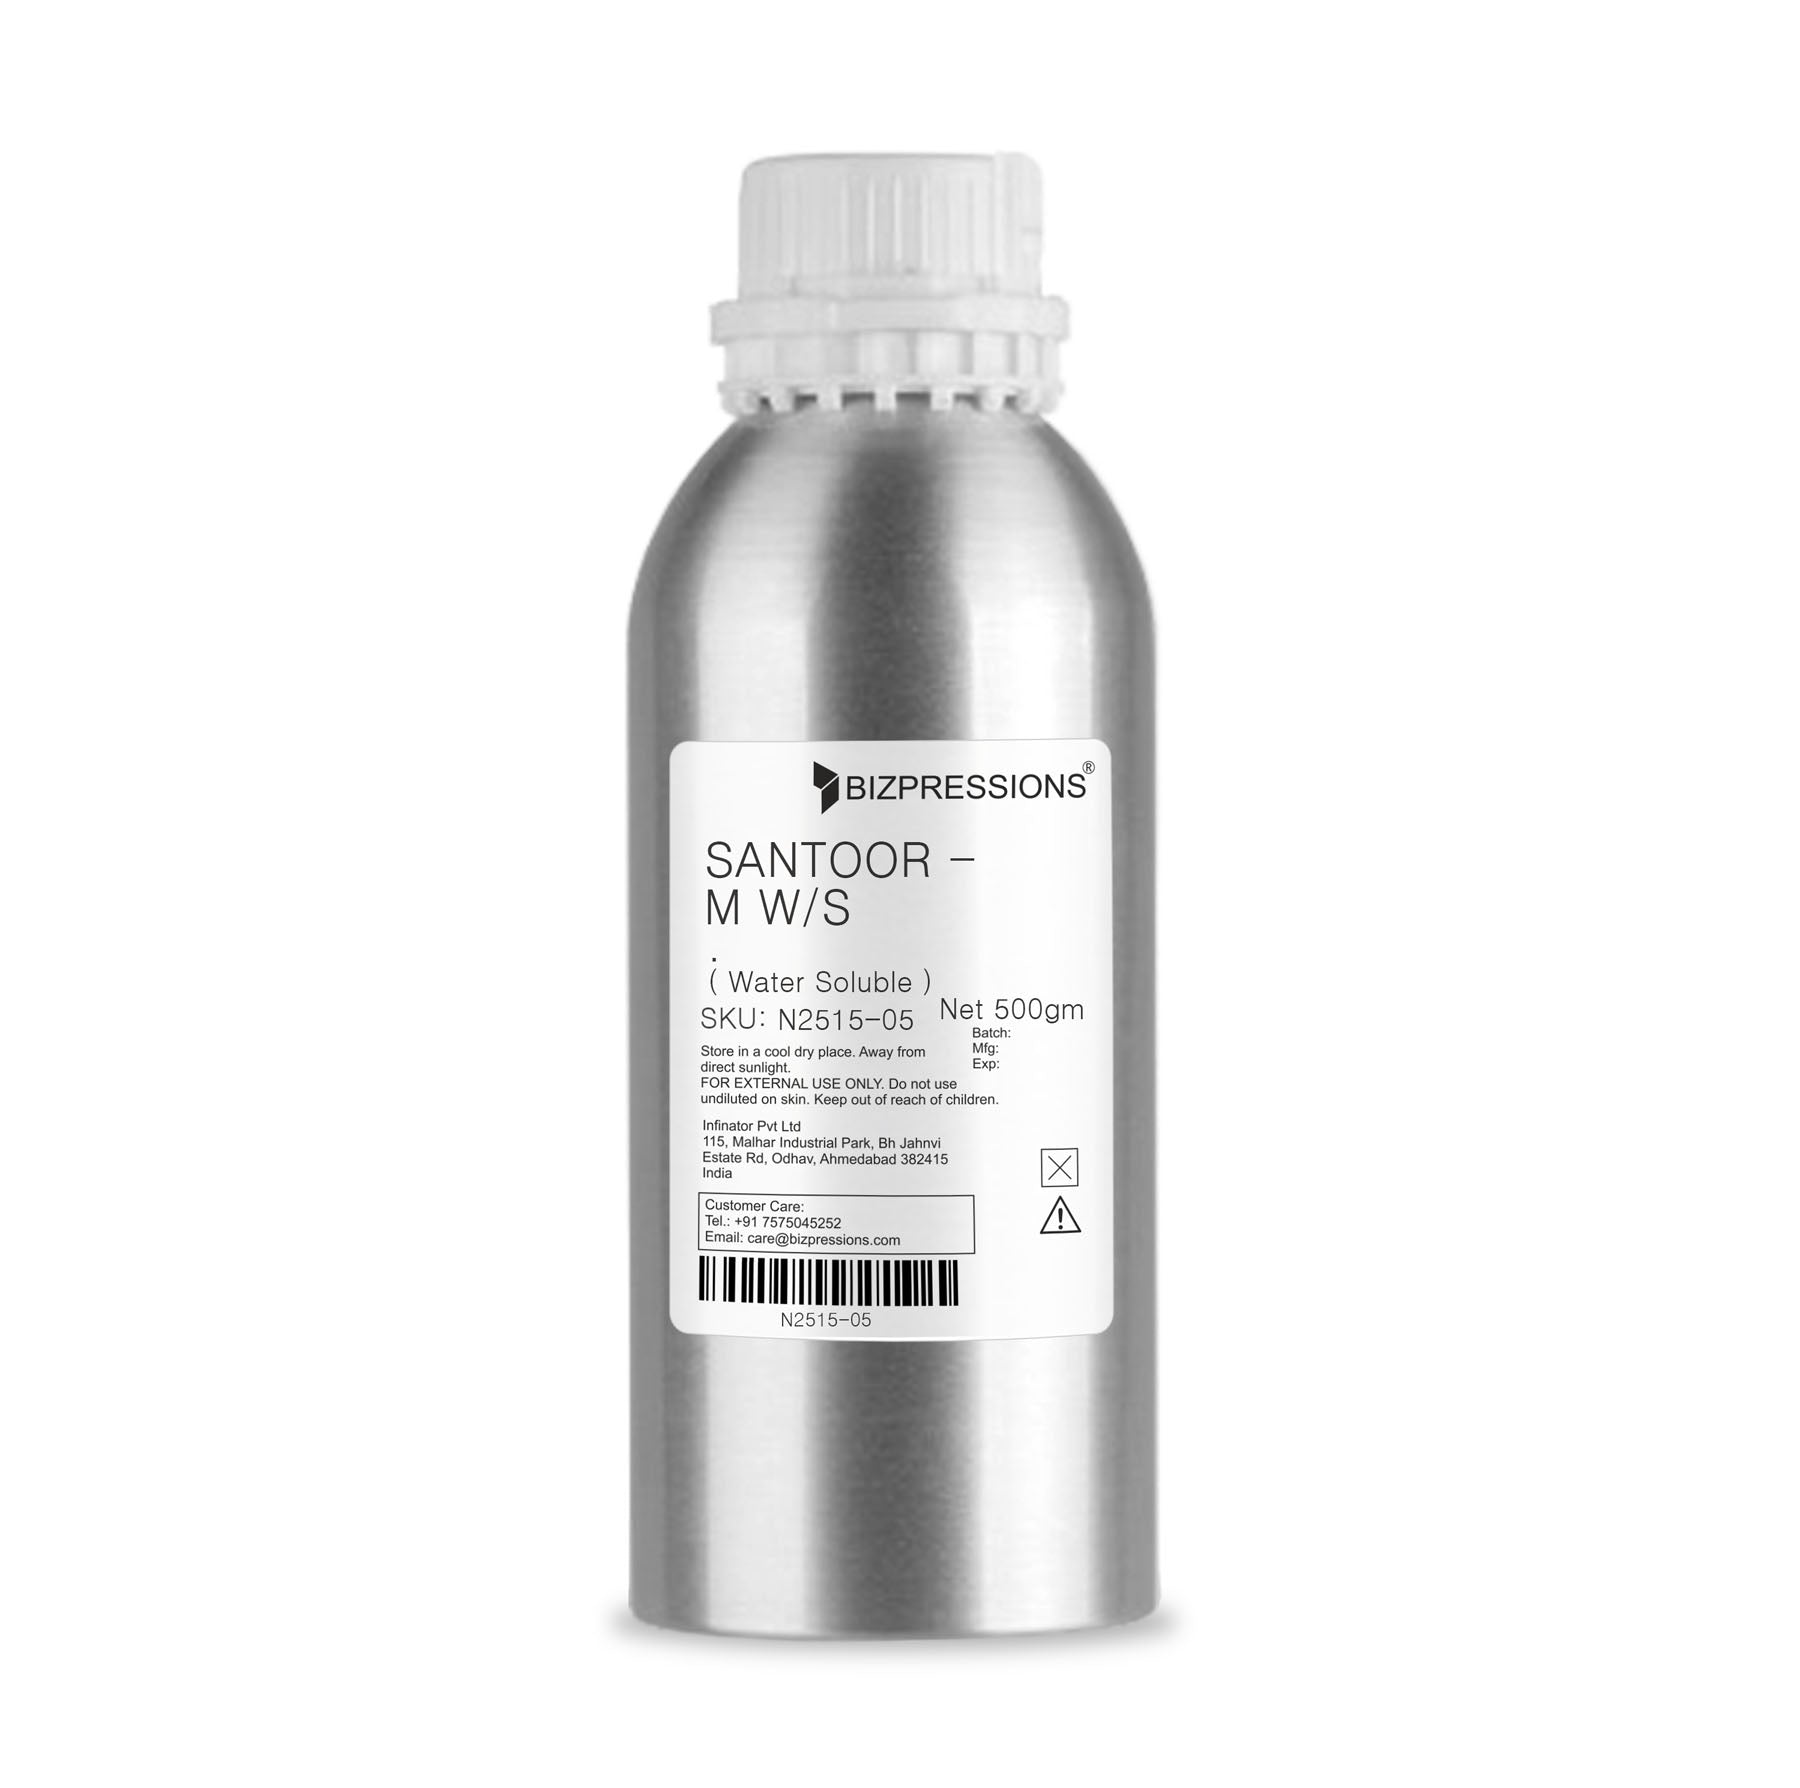 SANTOOR - M W/S - Fragrance ( Water Soluble ) - 500 gm